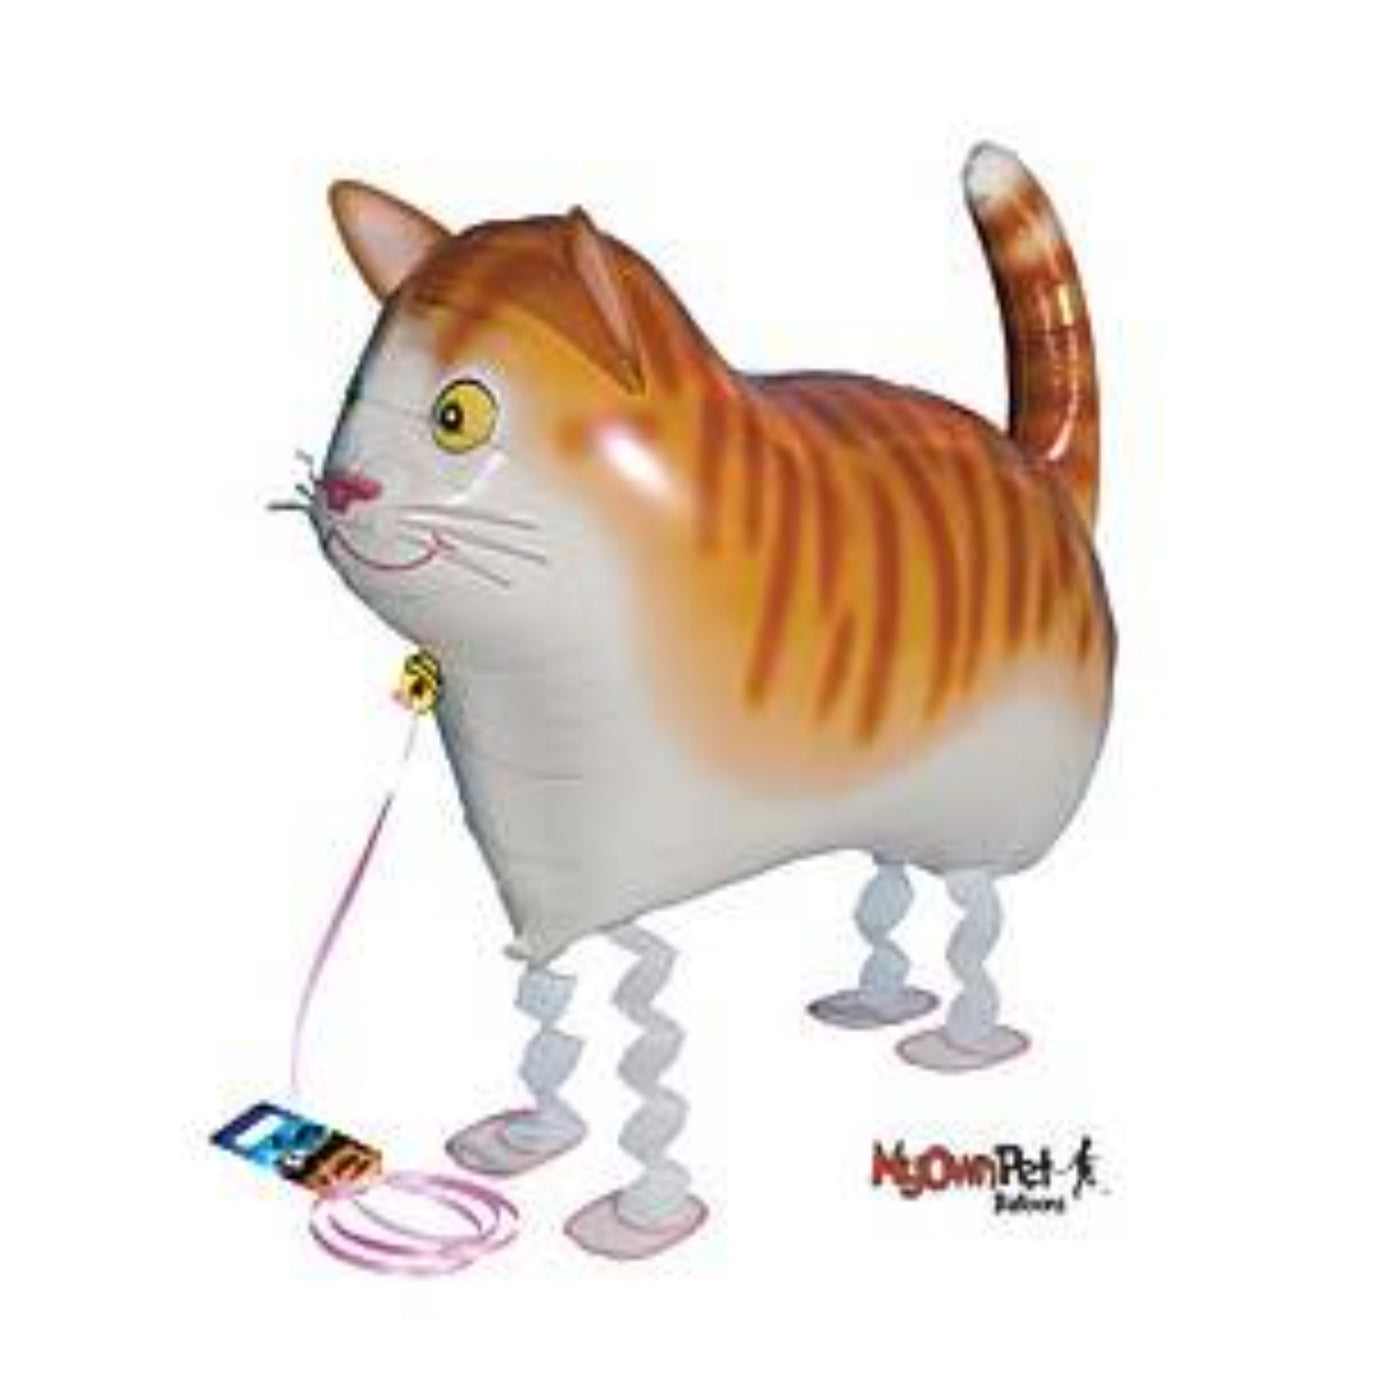 Tabby Kitten Pet Balloon Toy